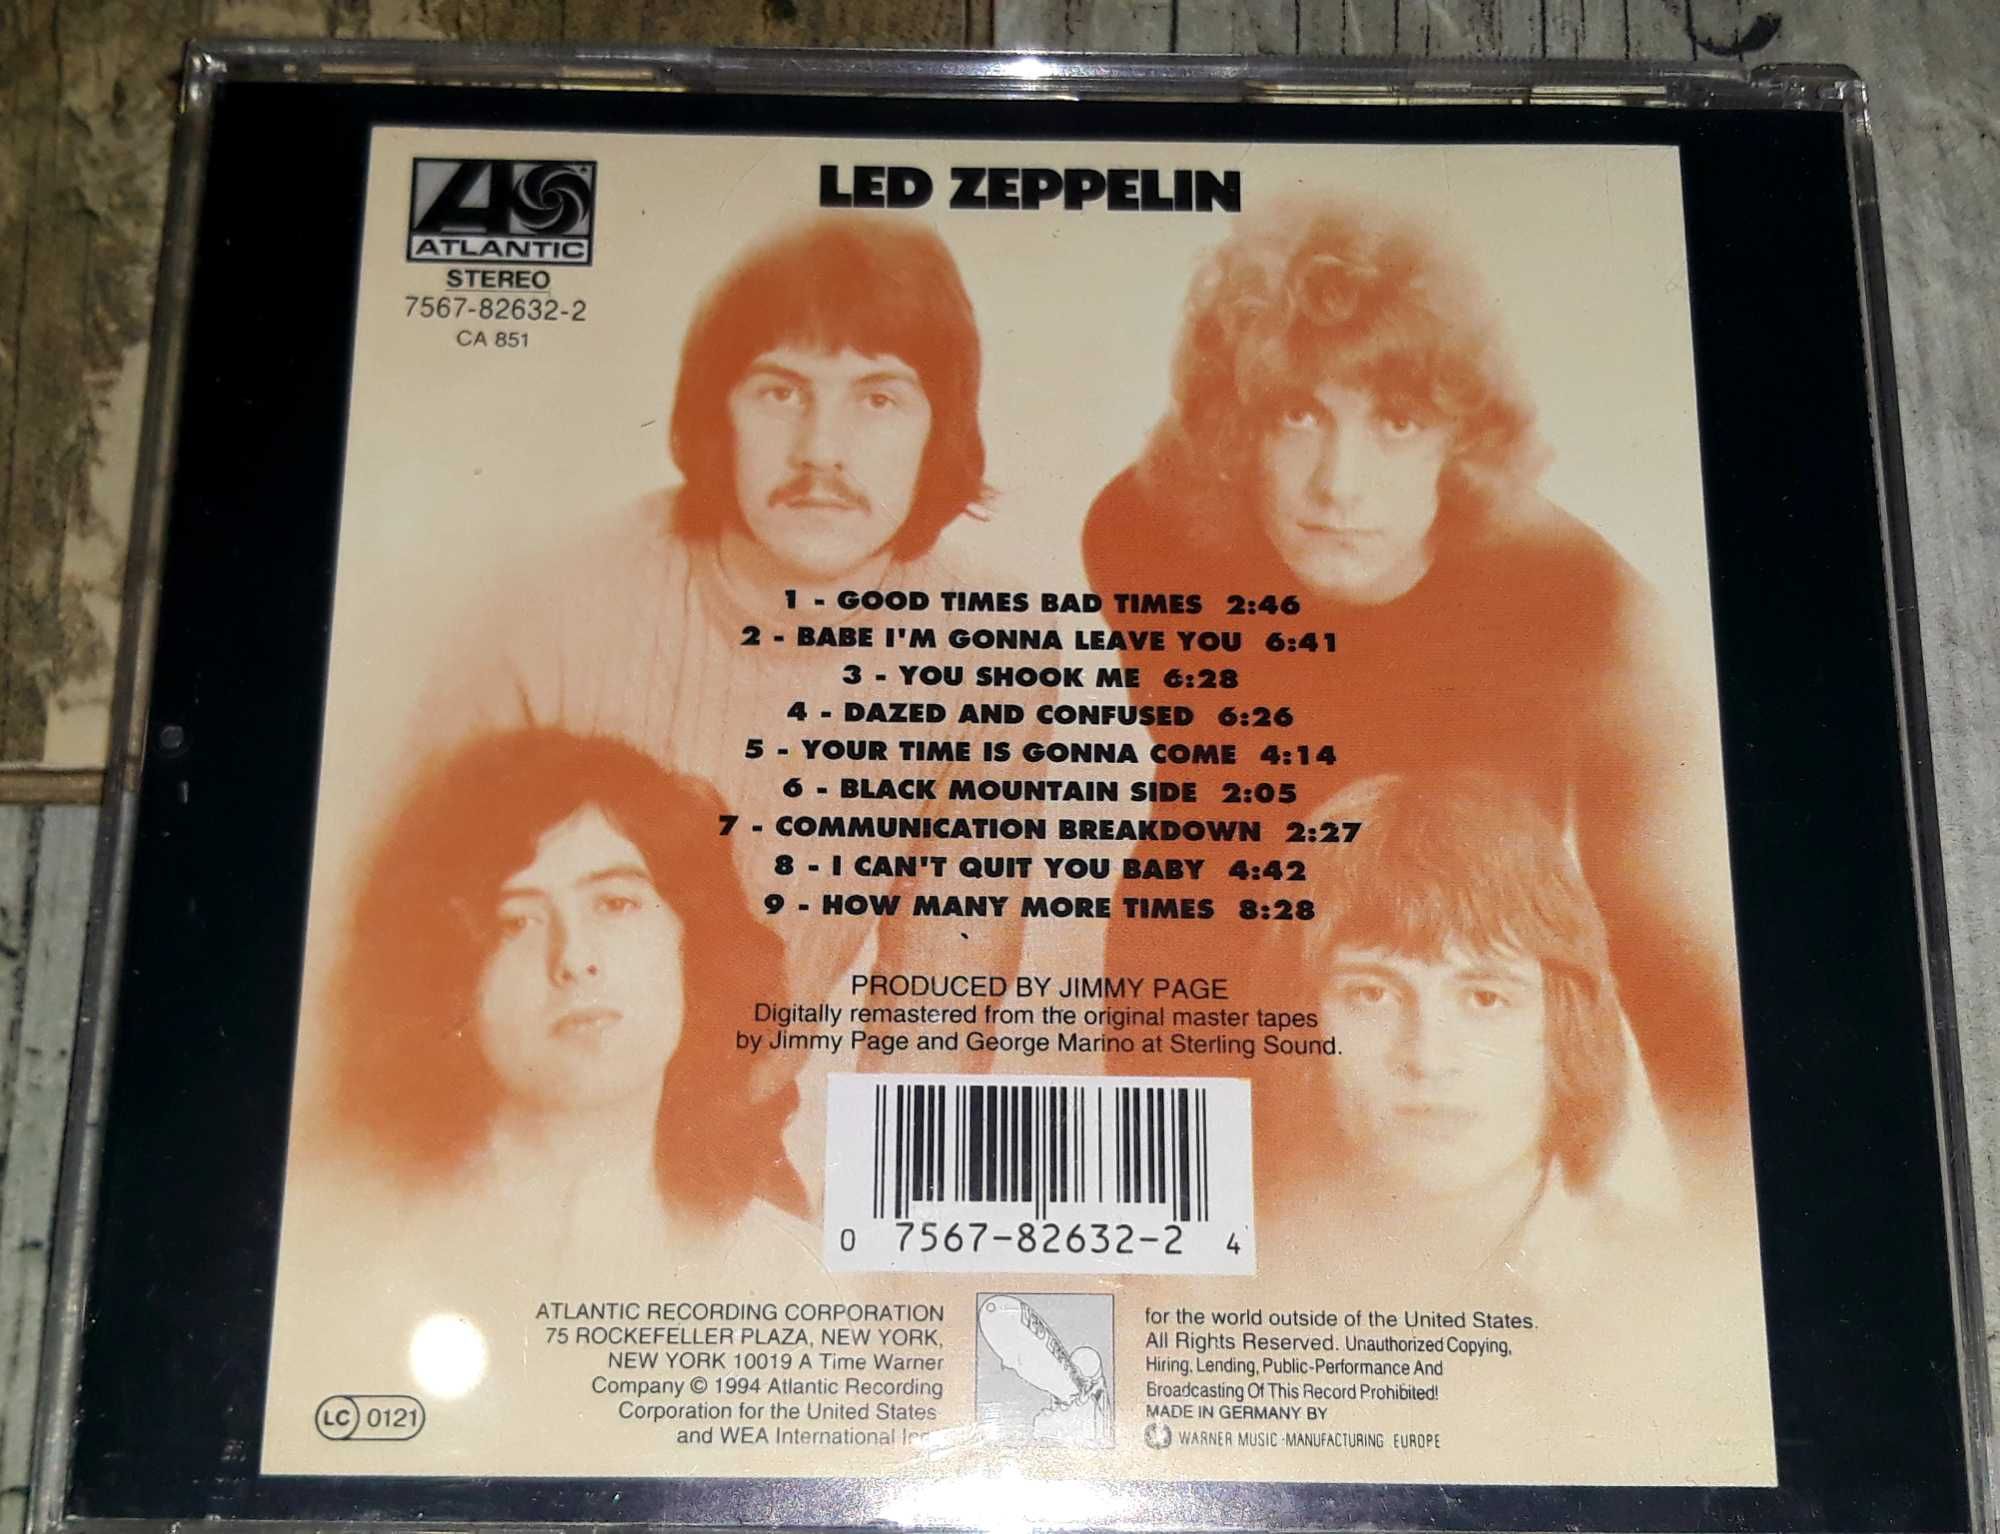 Led zeppelin - led zeppelin (Germany) CD